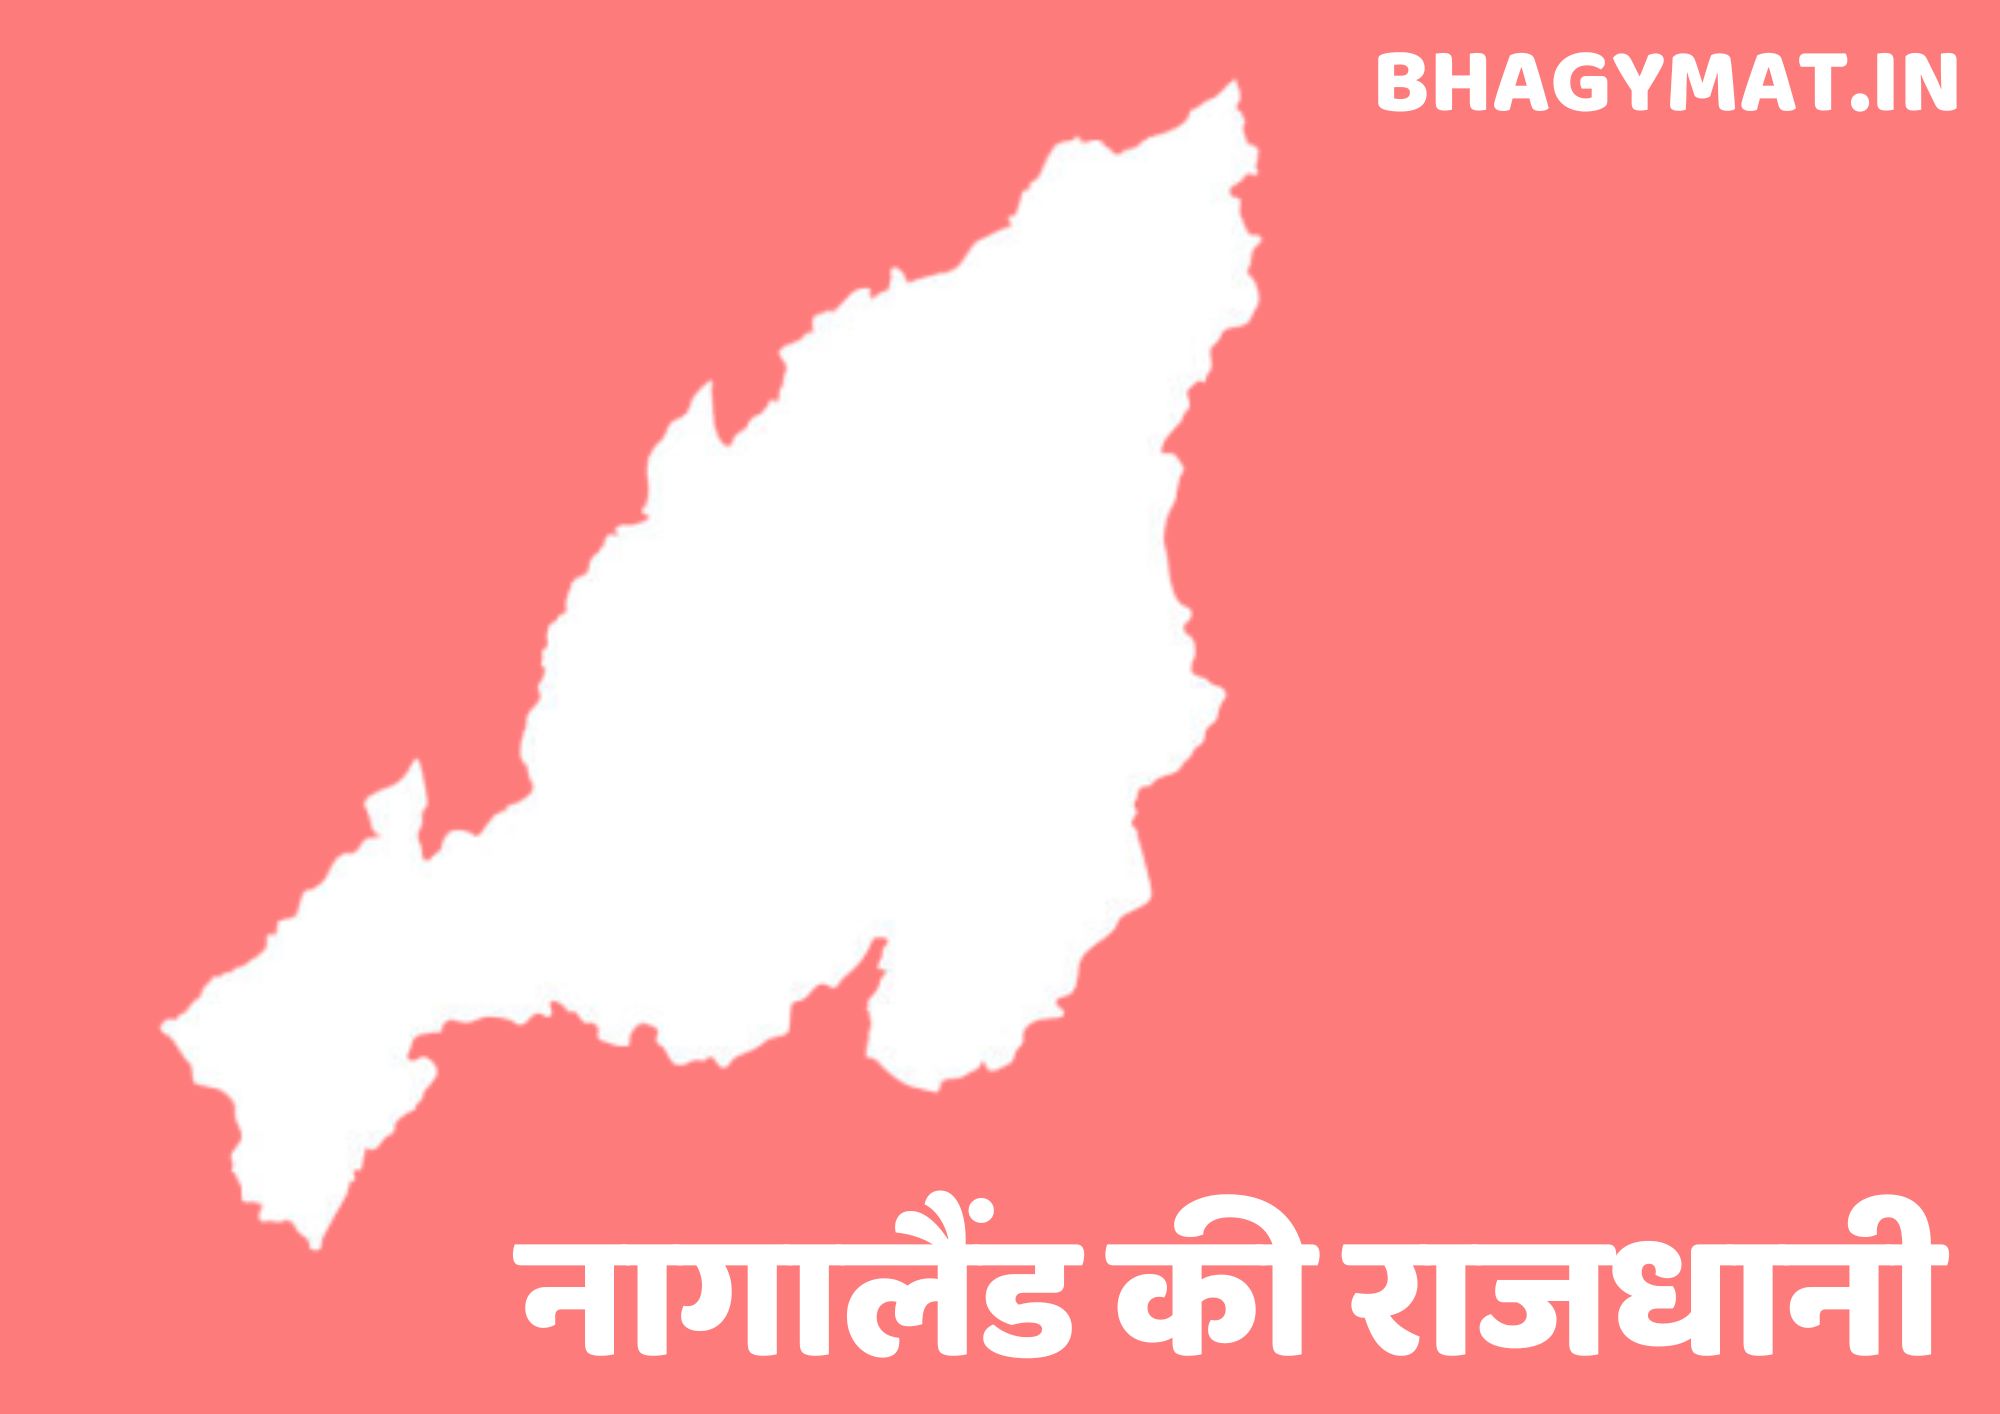 नागालैंड की राजधानी कहां है (नागालैंड की राजधानी क्या है) – Nagaland Ki Rajdhani Kahan Hai | Nagaland Ki Rajdhani Kya Hai